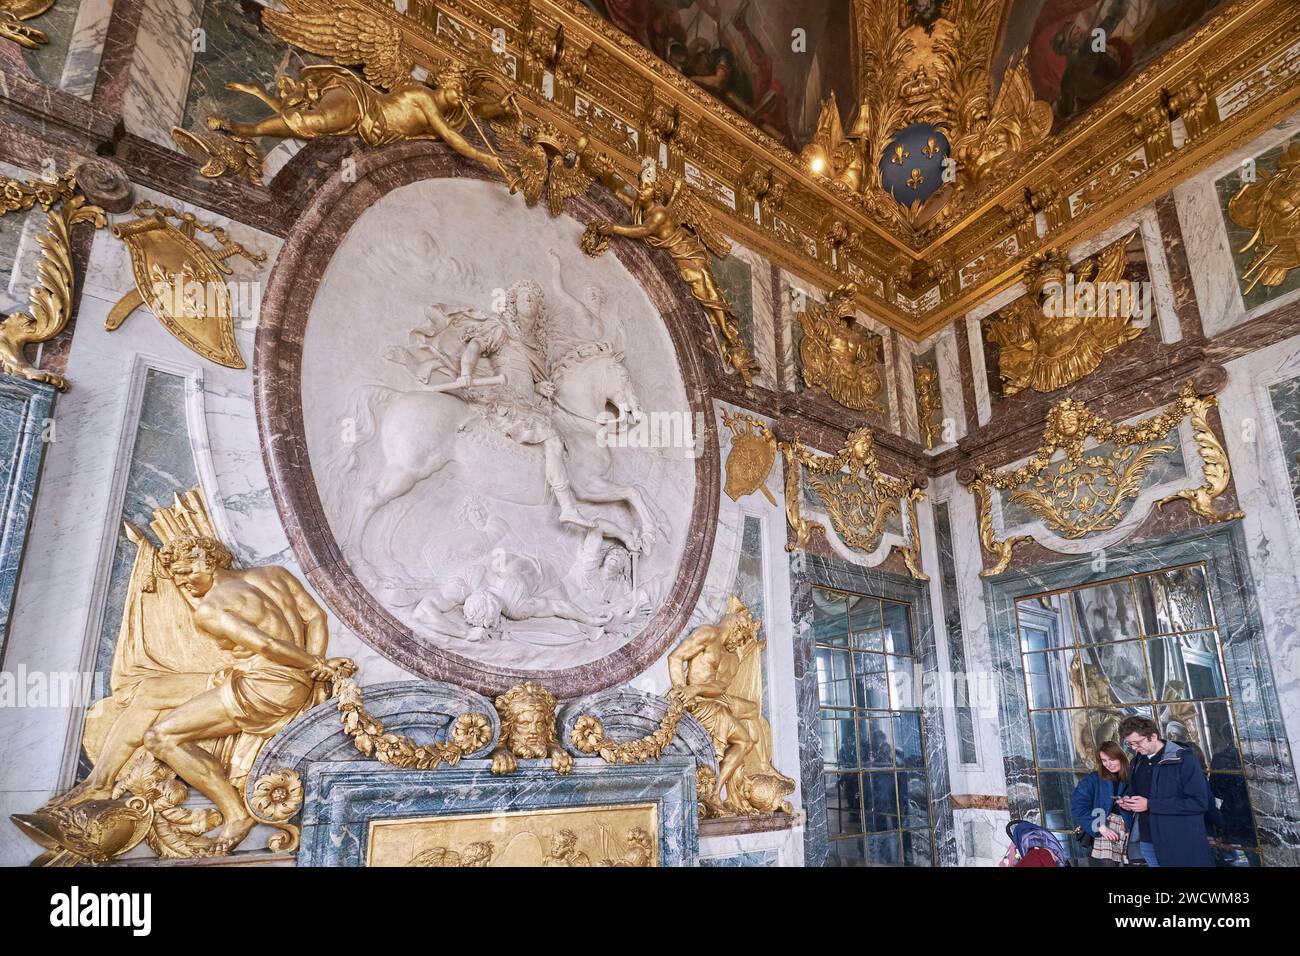 Frankreich, Yvelines, Versailles, Schloss von Versailles, das von der UNESCO zum Weltkulturerbe erklärt wurde, der Kriegssalon am Ende des Spiegelsaals mit dem siegreichen Ludwig XIV Stockfoto